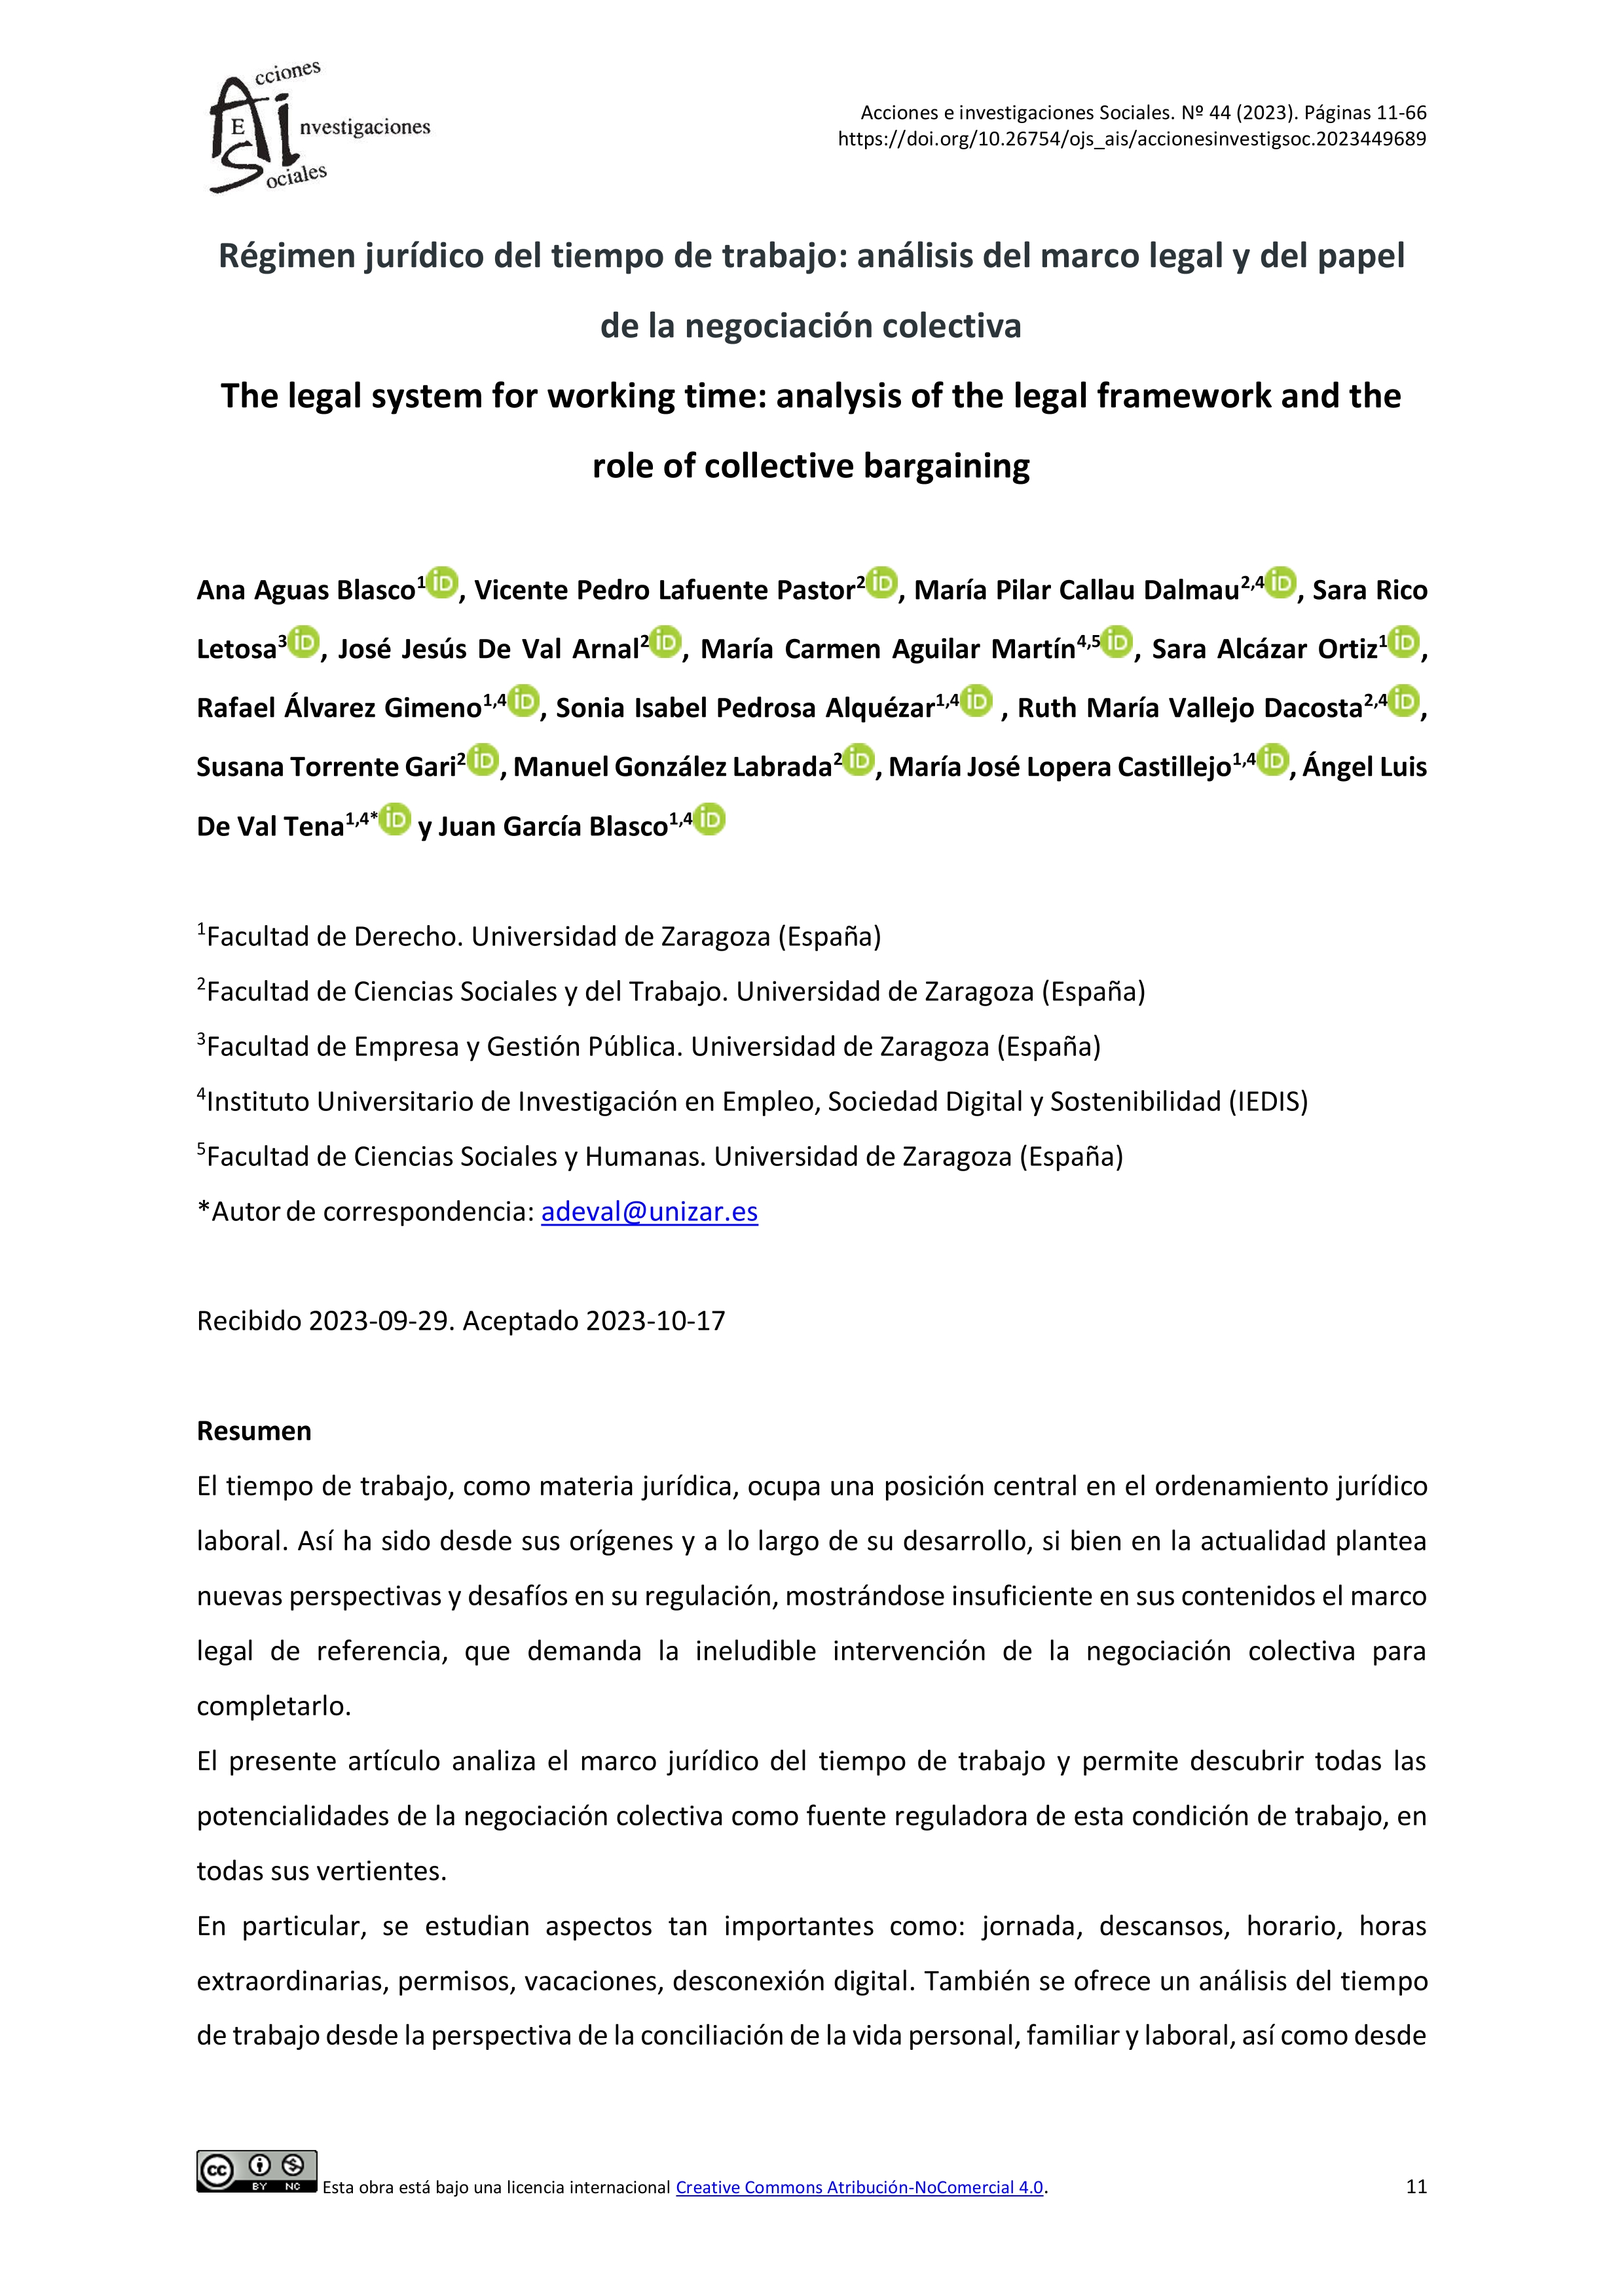 Régimen jurídico del tiempo de trabajo: análisis del marco legal y del papel de la negociación colectiva